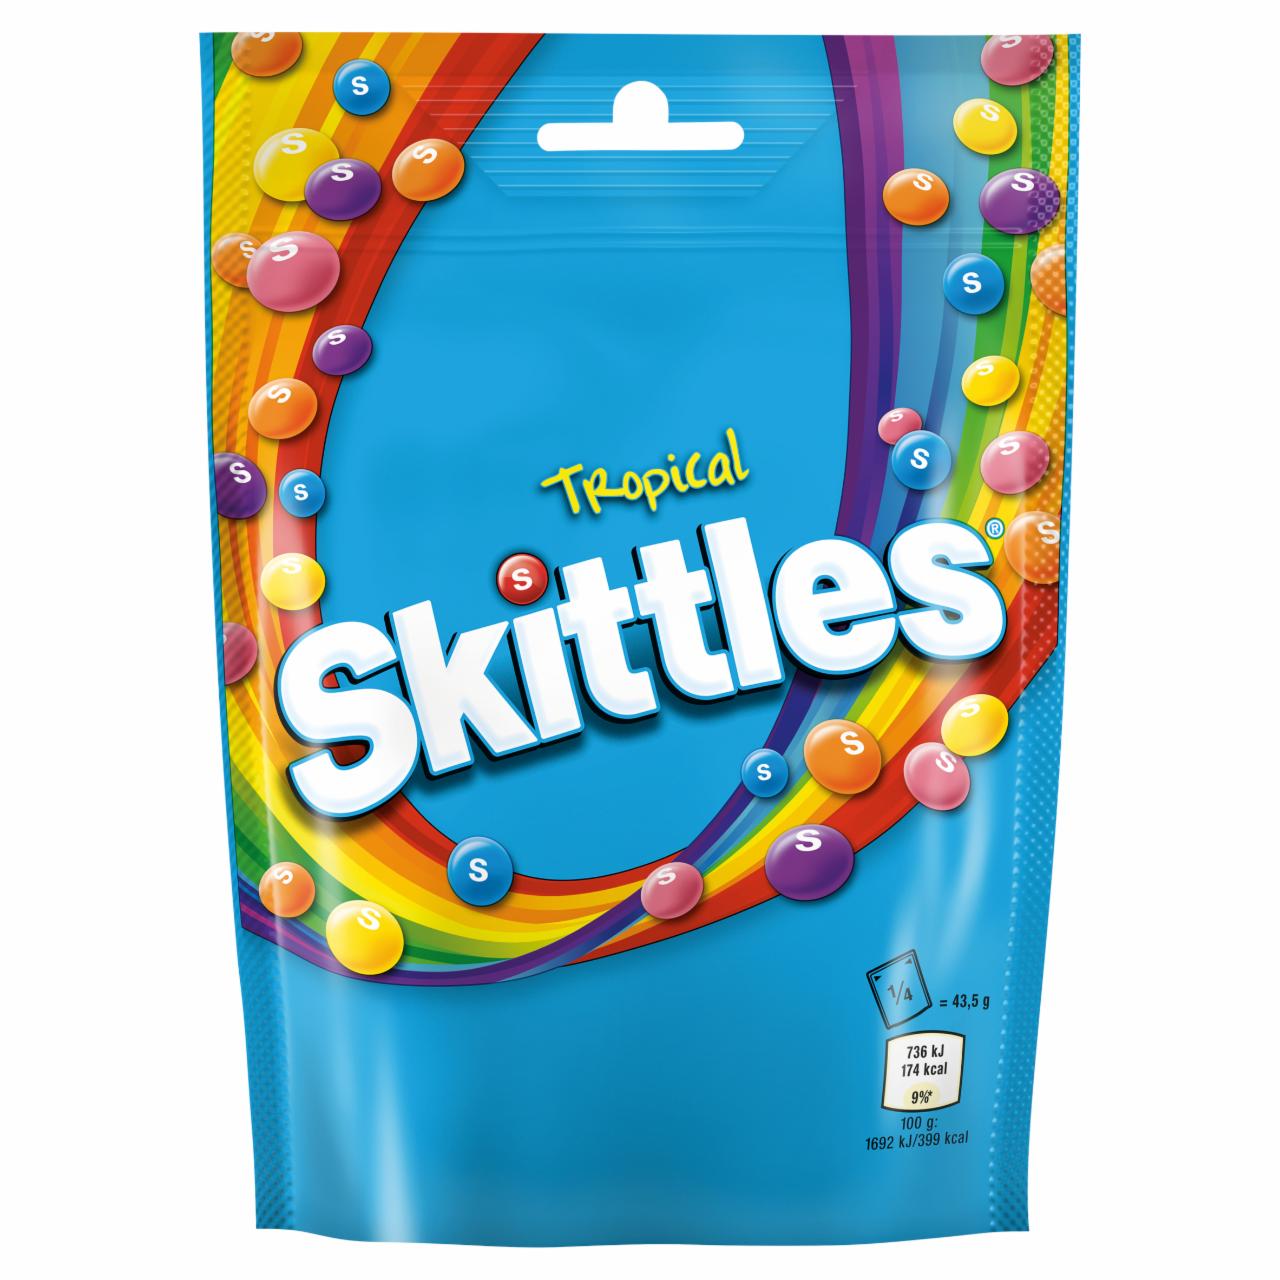 Zdjęcia - Skittles Tropical Cukierki do żucia 174 g